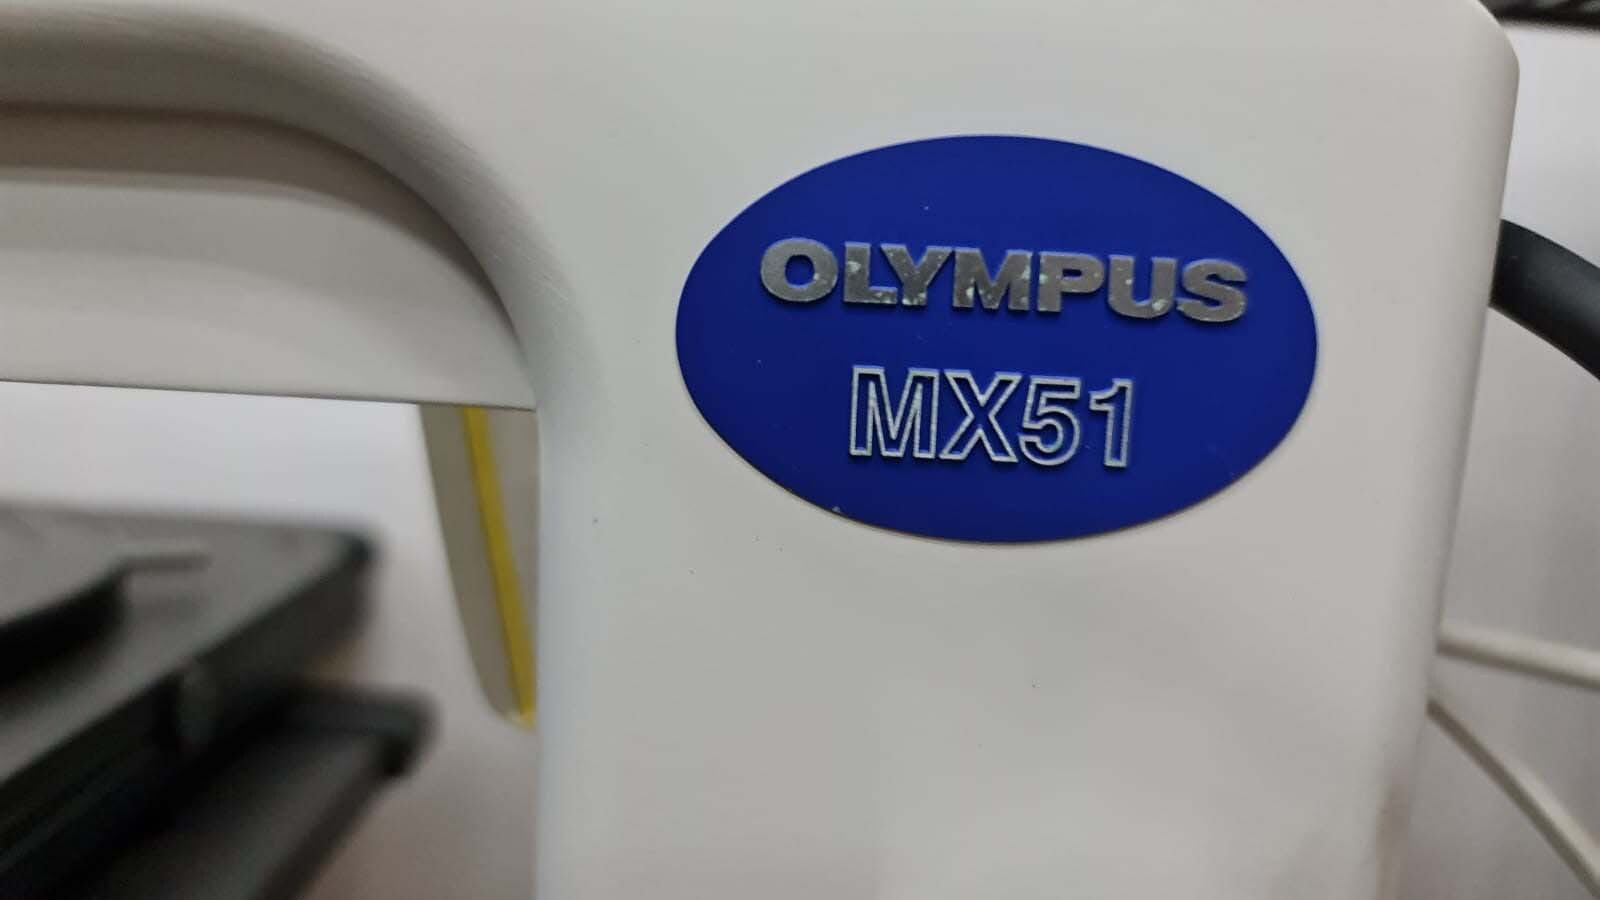 圖為 已使用的 OLYMPUS MX51-F 待售